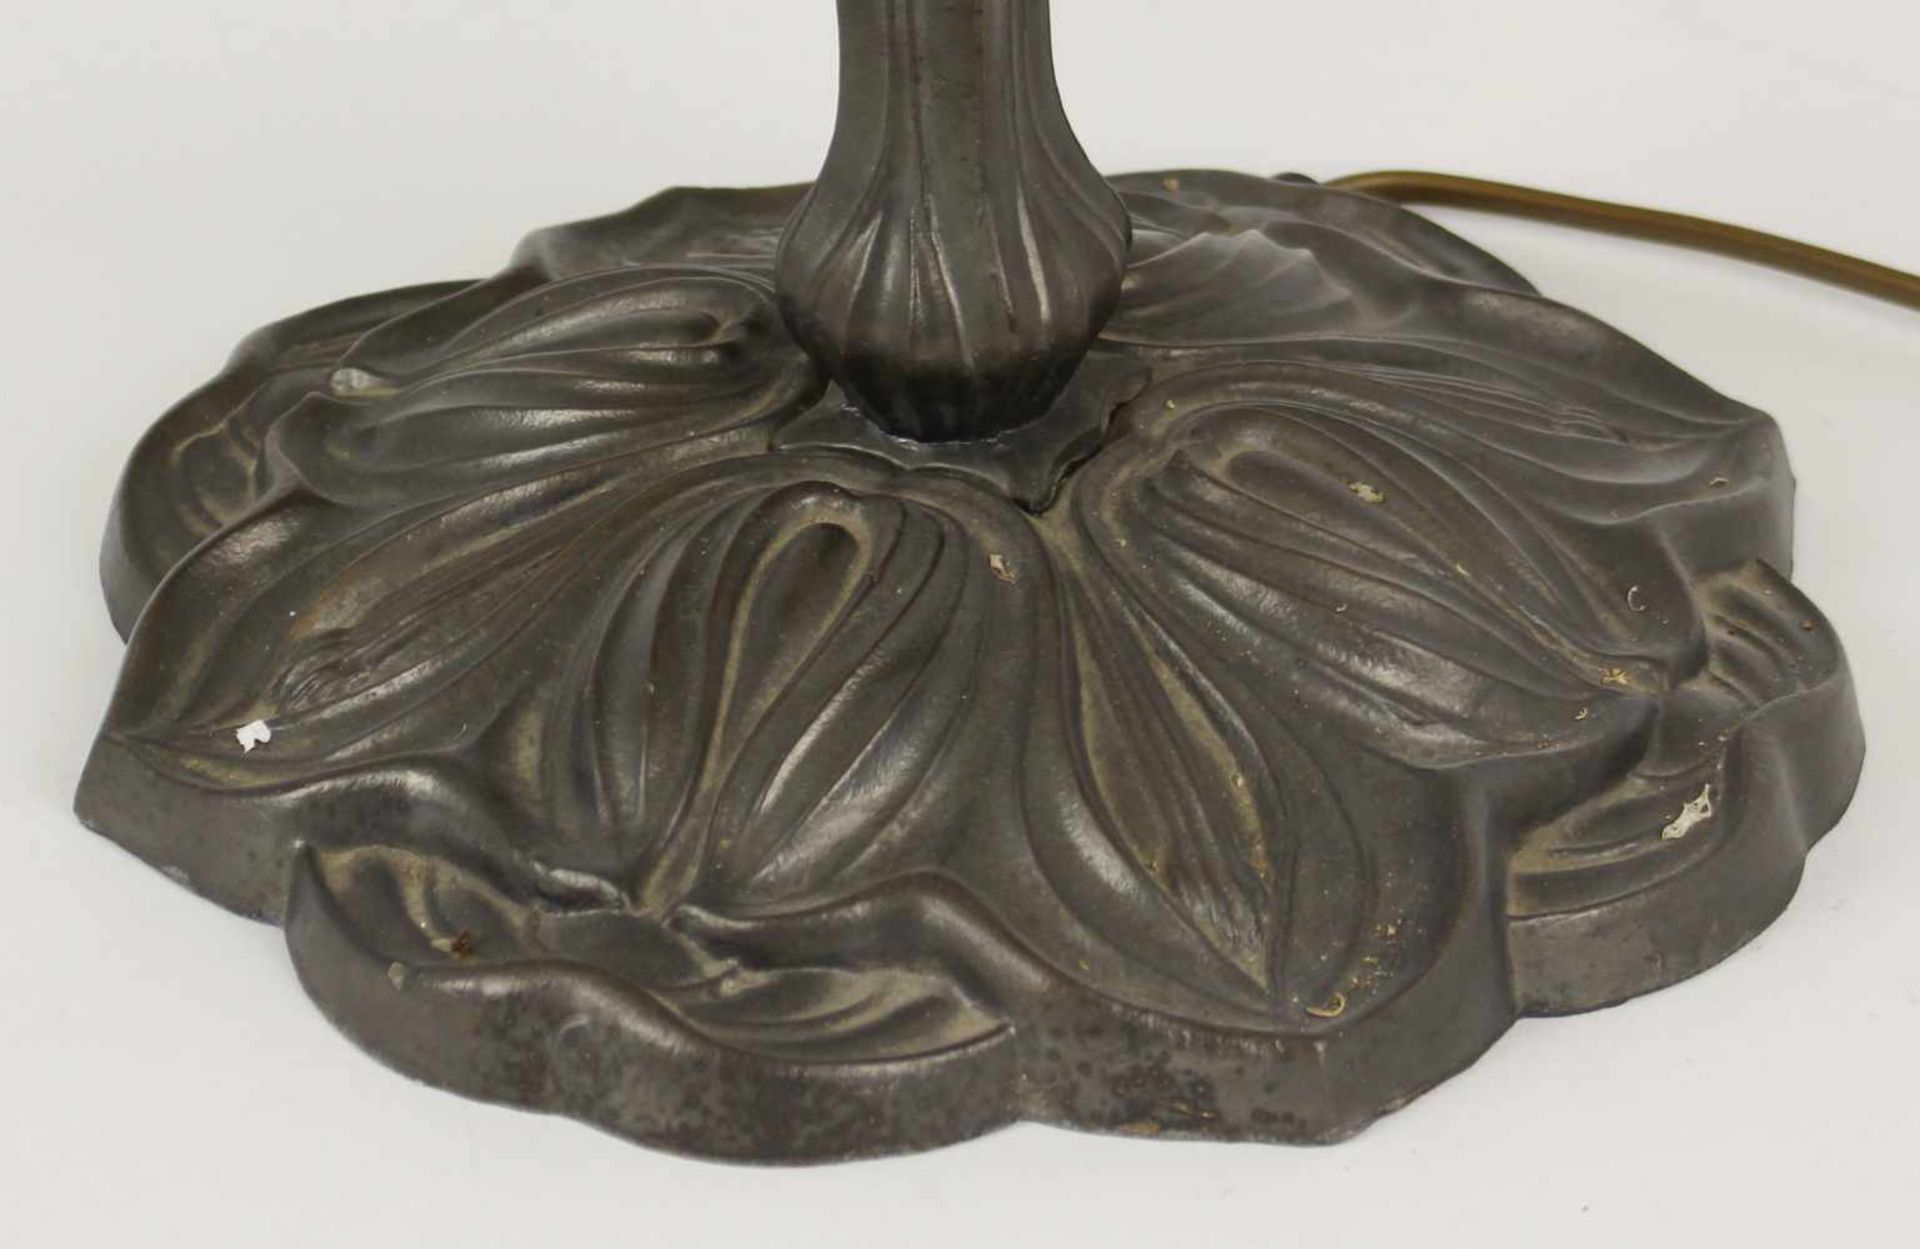 TischlampeTiffany Stil, bronzefarbenes Metall, einflammig, vegetabiler Fuß u. Schaft, weit - Bild 5 aus 5